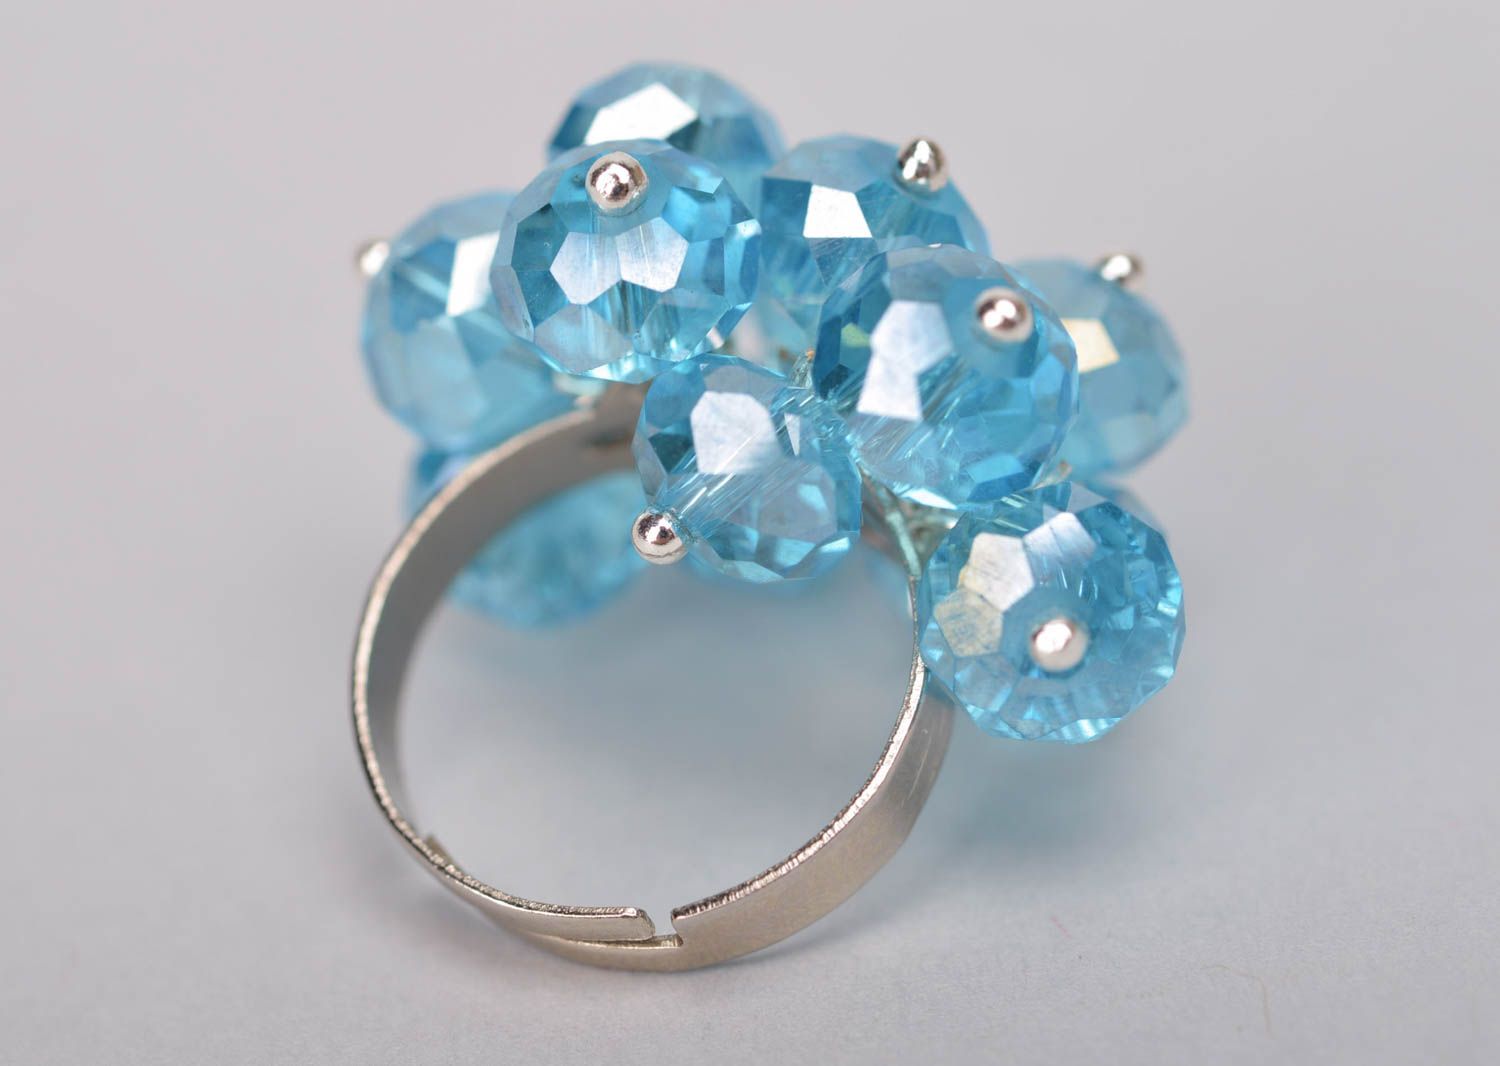 Голубое бестящее кольцо из стекляруса авторский аксессуар ручной работы фото 5